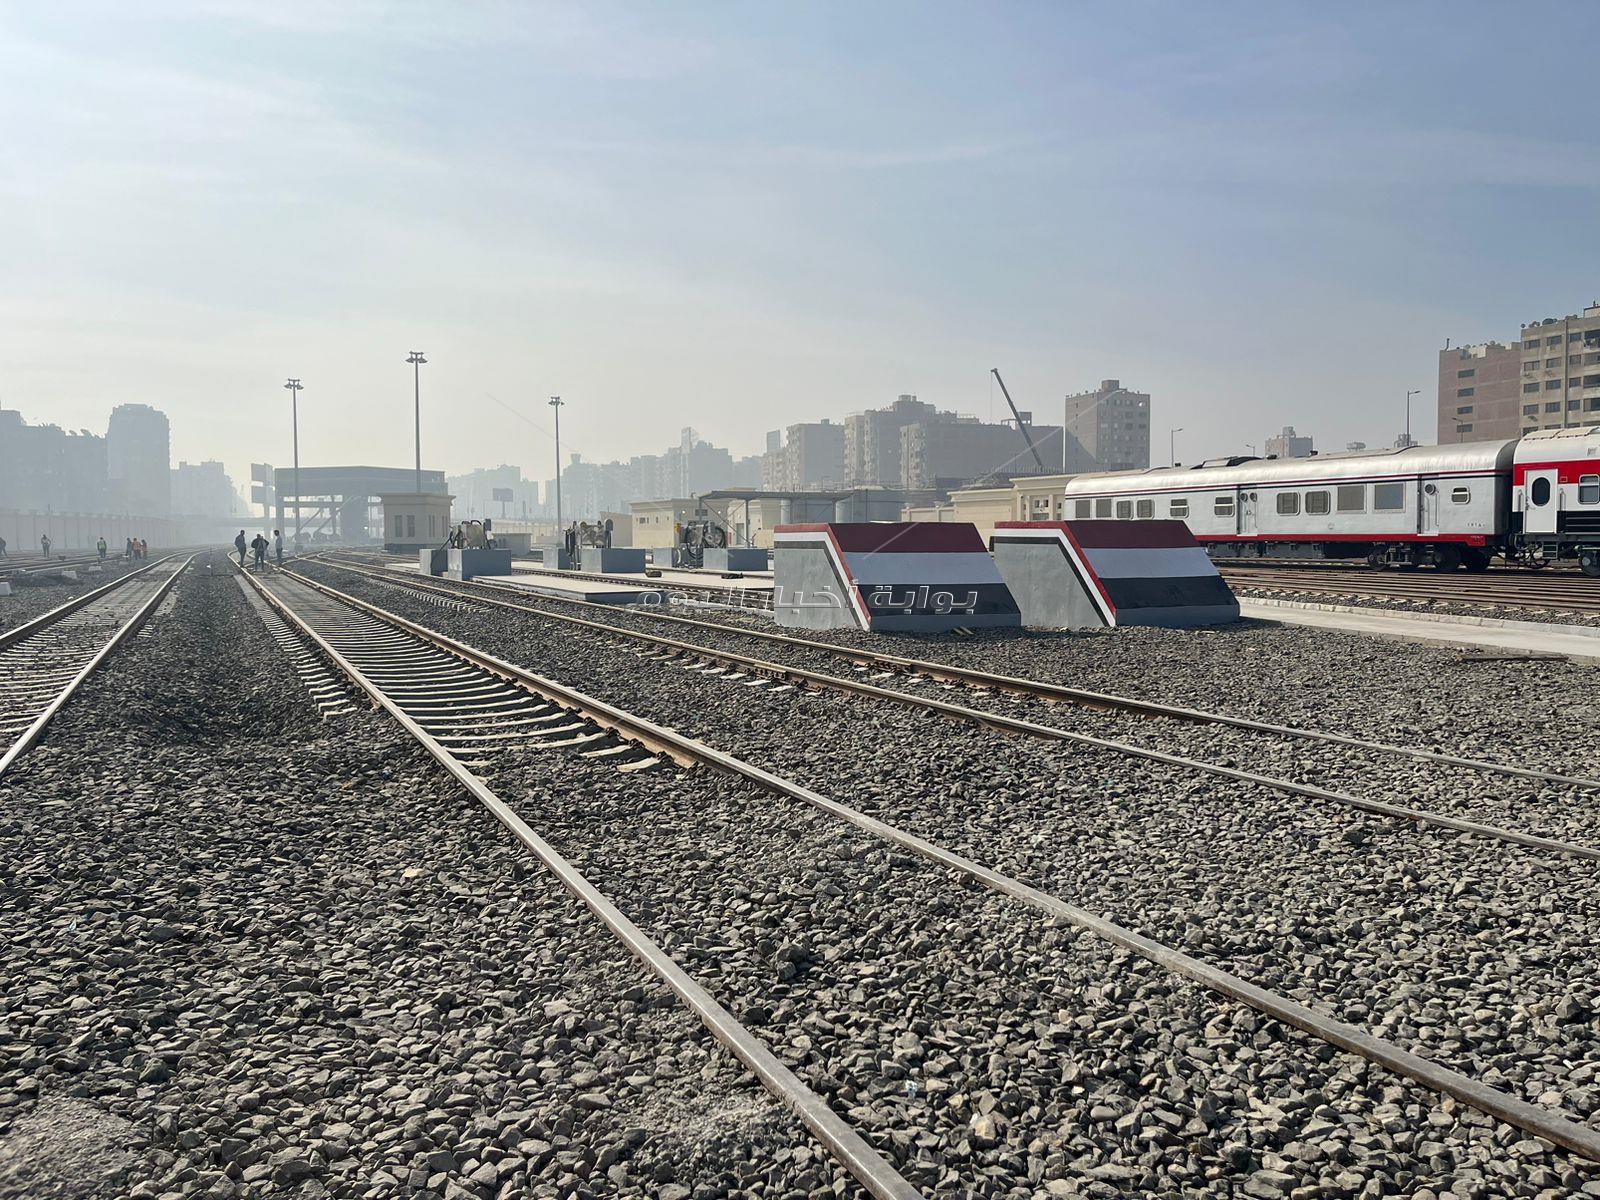 اللمسات الأخيرة لافتتاح محطة قطارات الصعيد في بشتيل